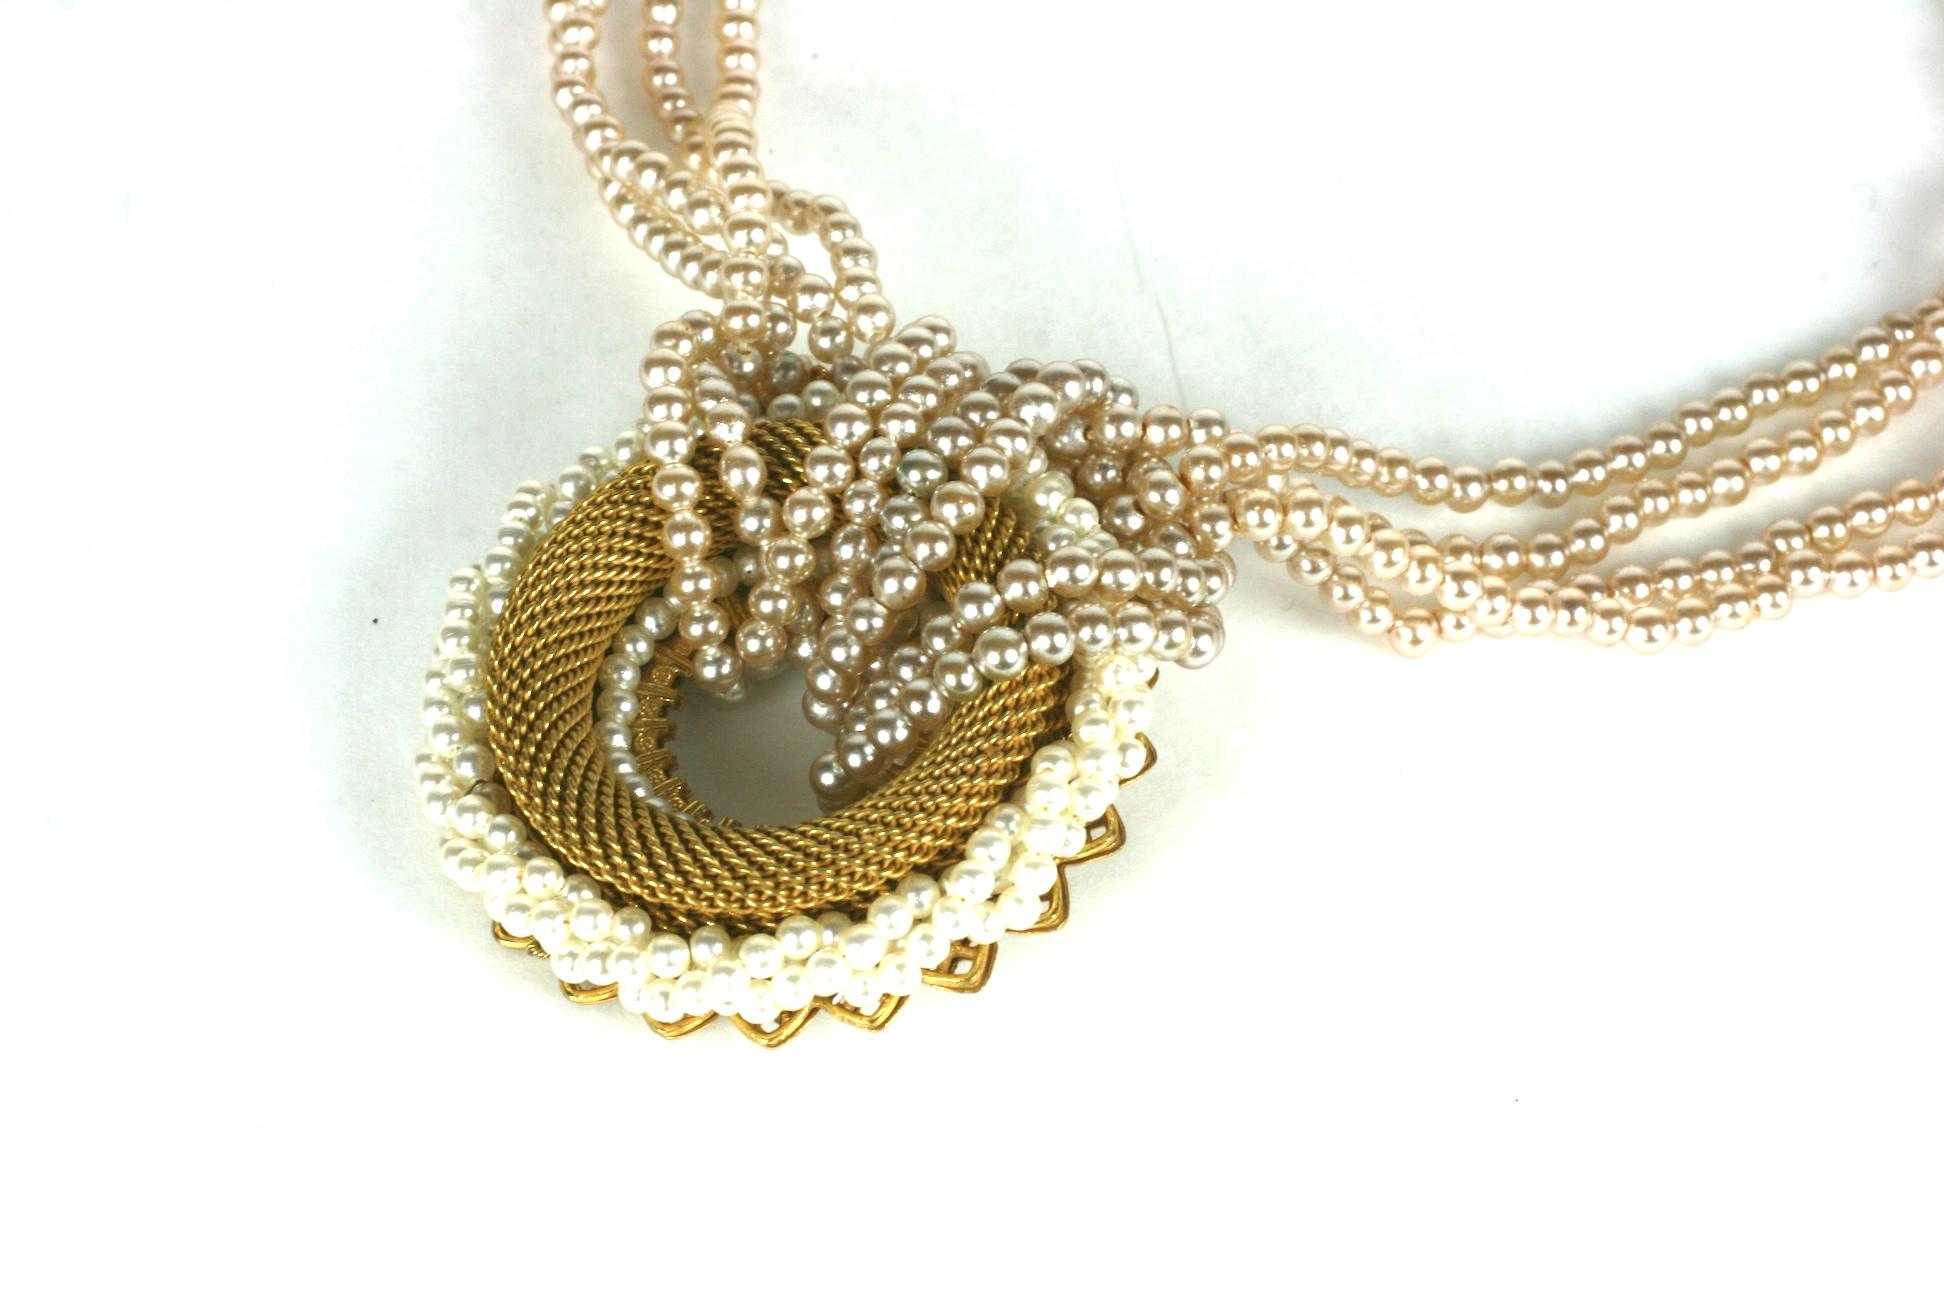 Collier Miriam Haskell en vermeil et fausses perles composé d'un cercle en laiton doré finement tissé monté sur un filigrane doré signature    bordé par une corde torsadée de petites fausses perles. Quatre brins de perles sont enroulés dans le